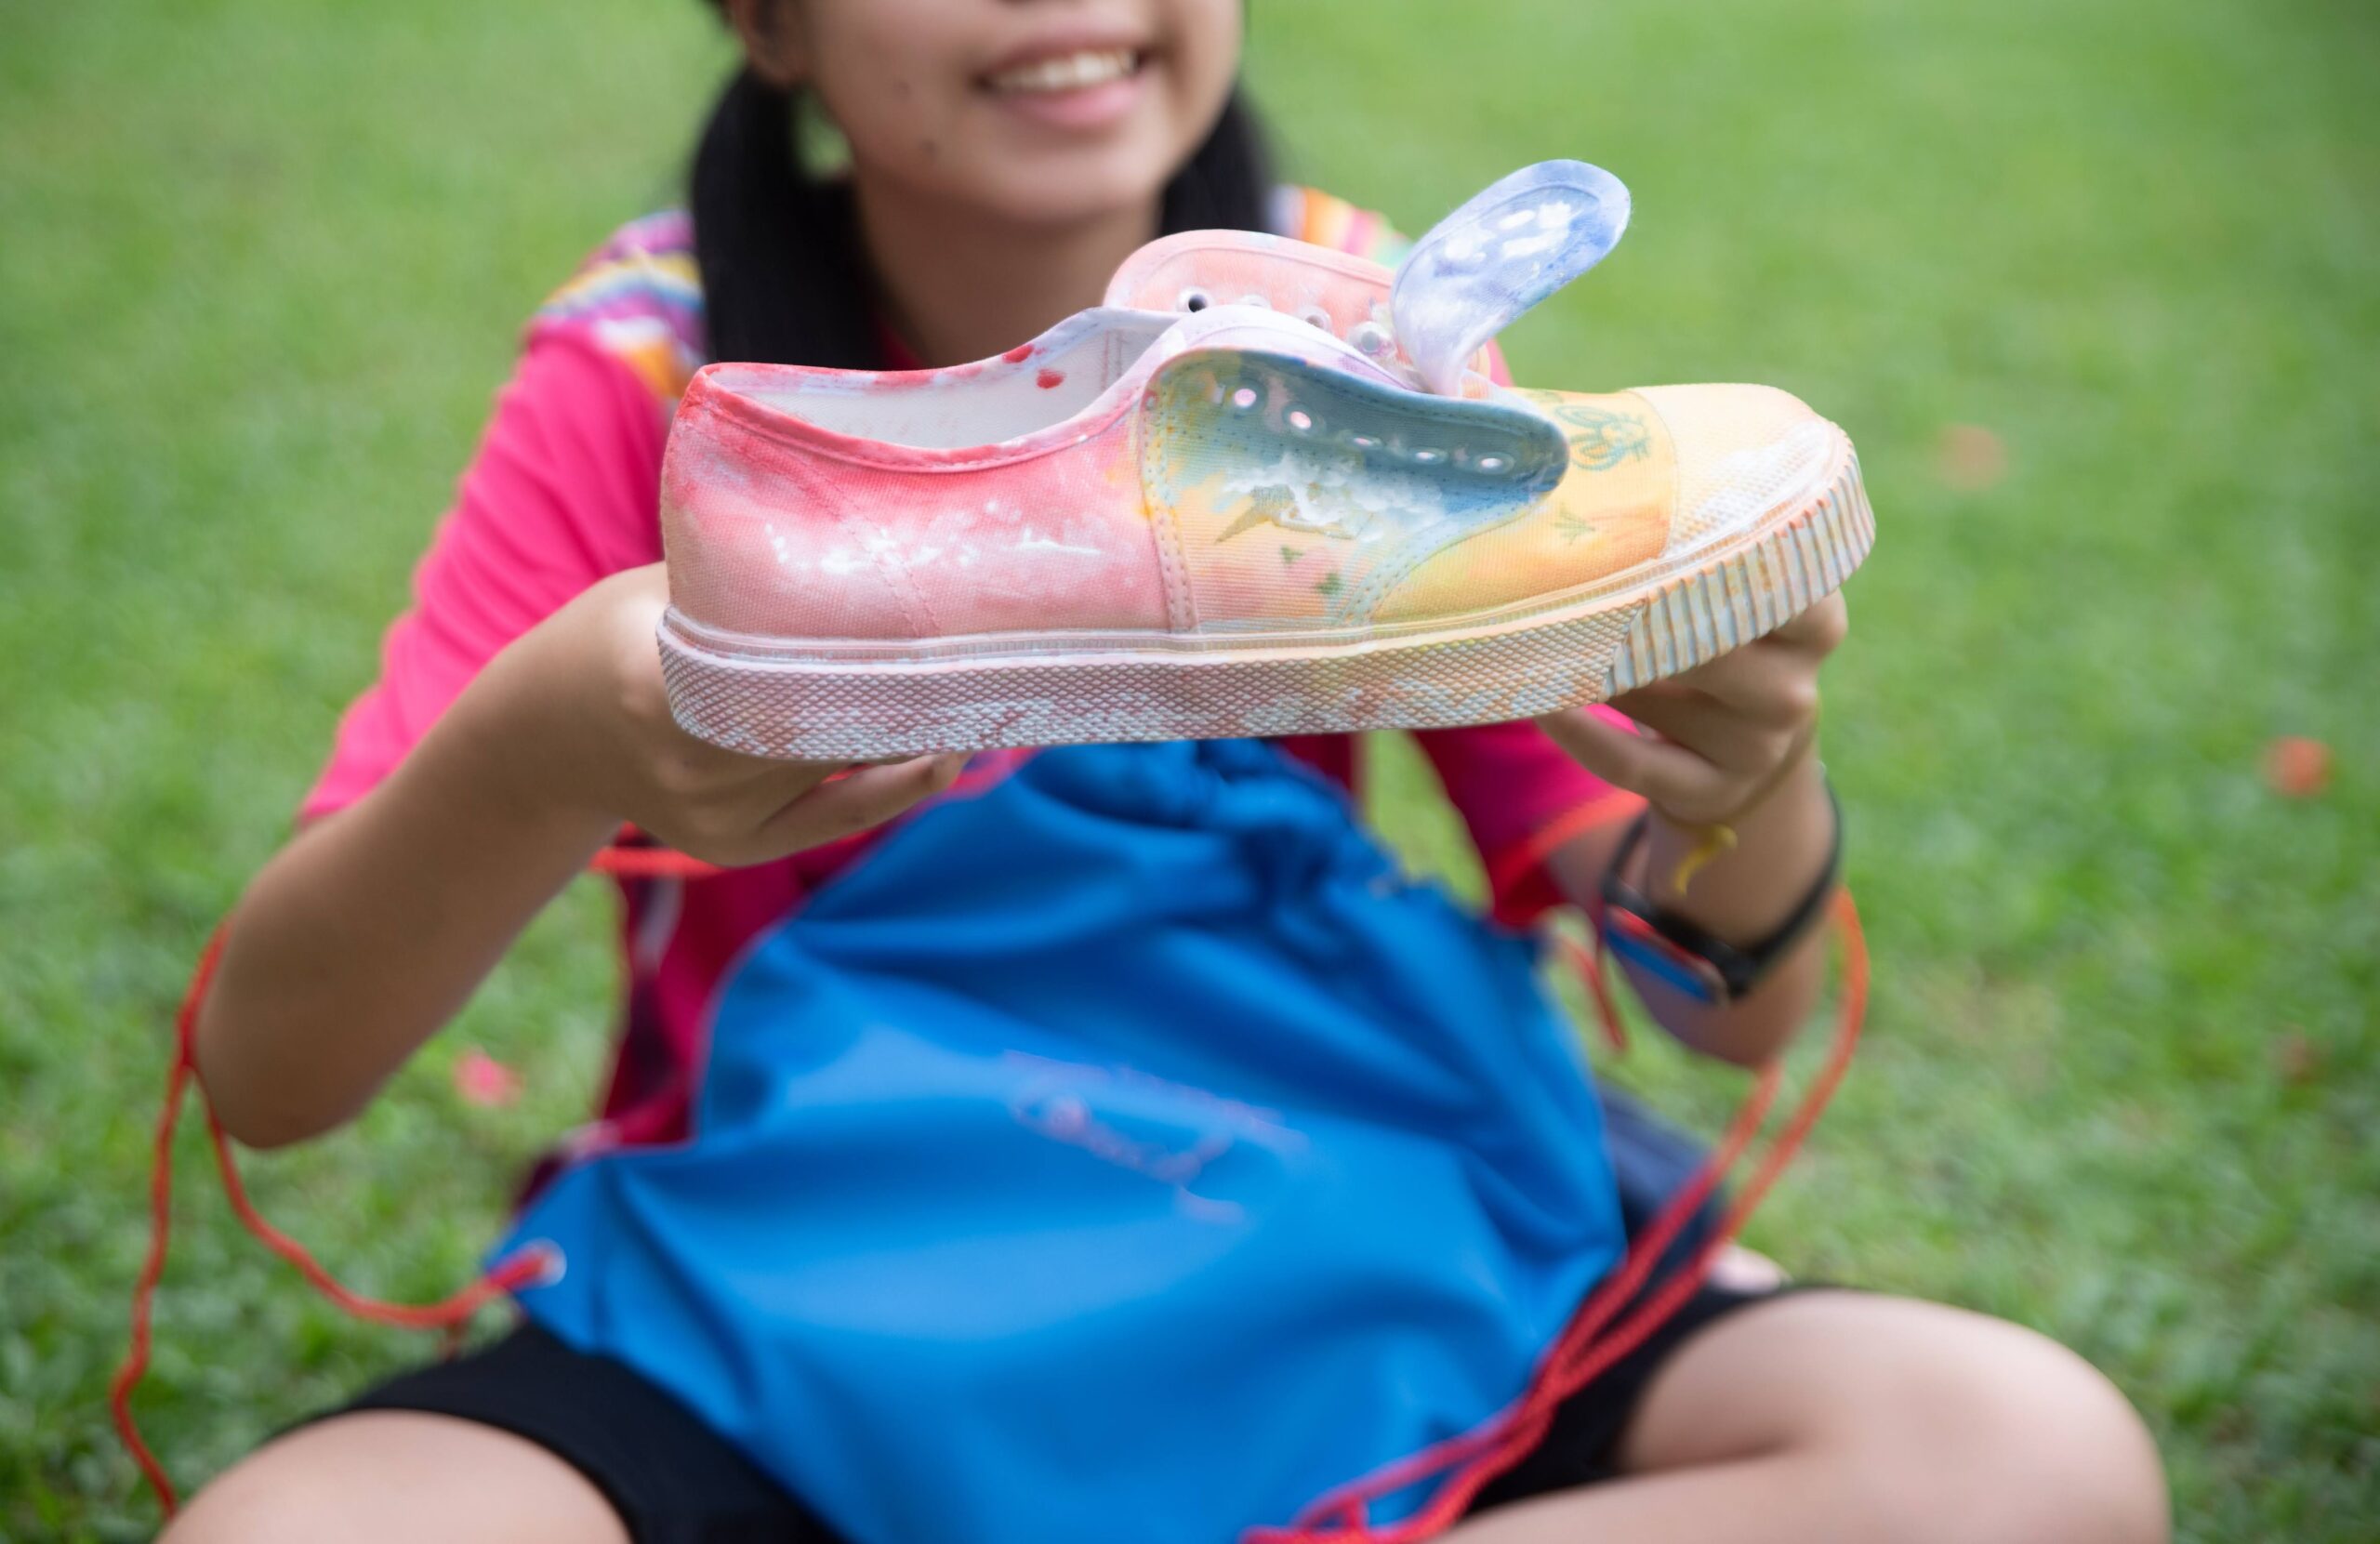 ยูโอบี ประเทศไทย เปิดจินตนาการและความคิดสร้างสรรค์เด็กพิการทางสายตา